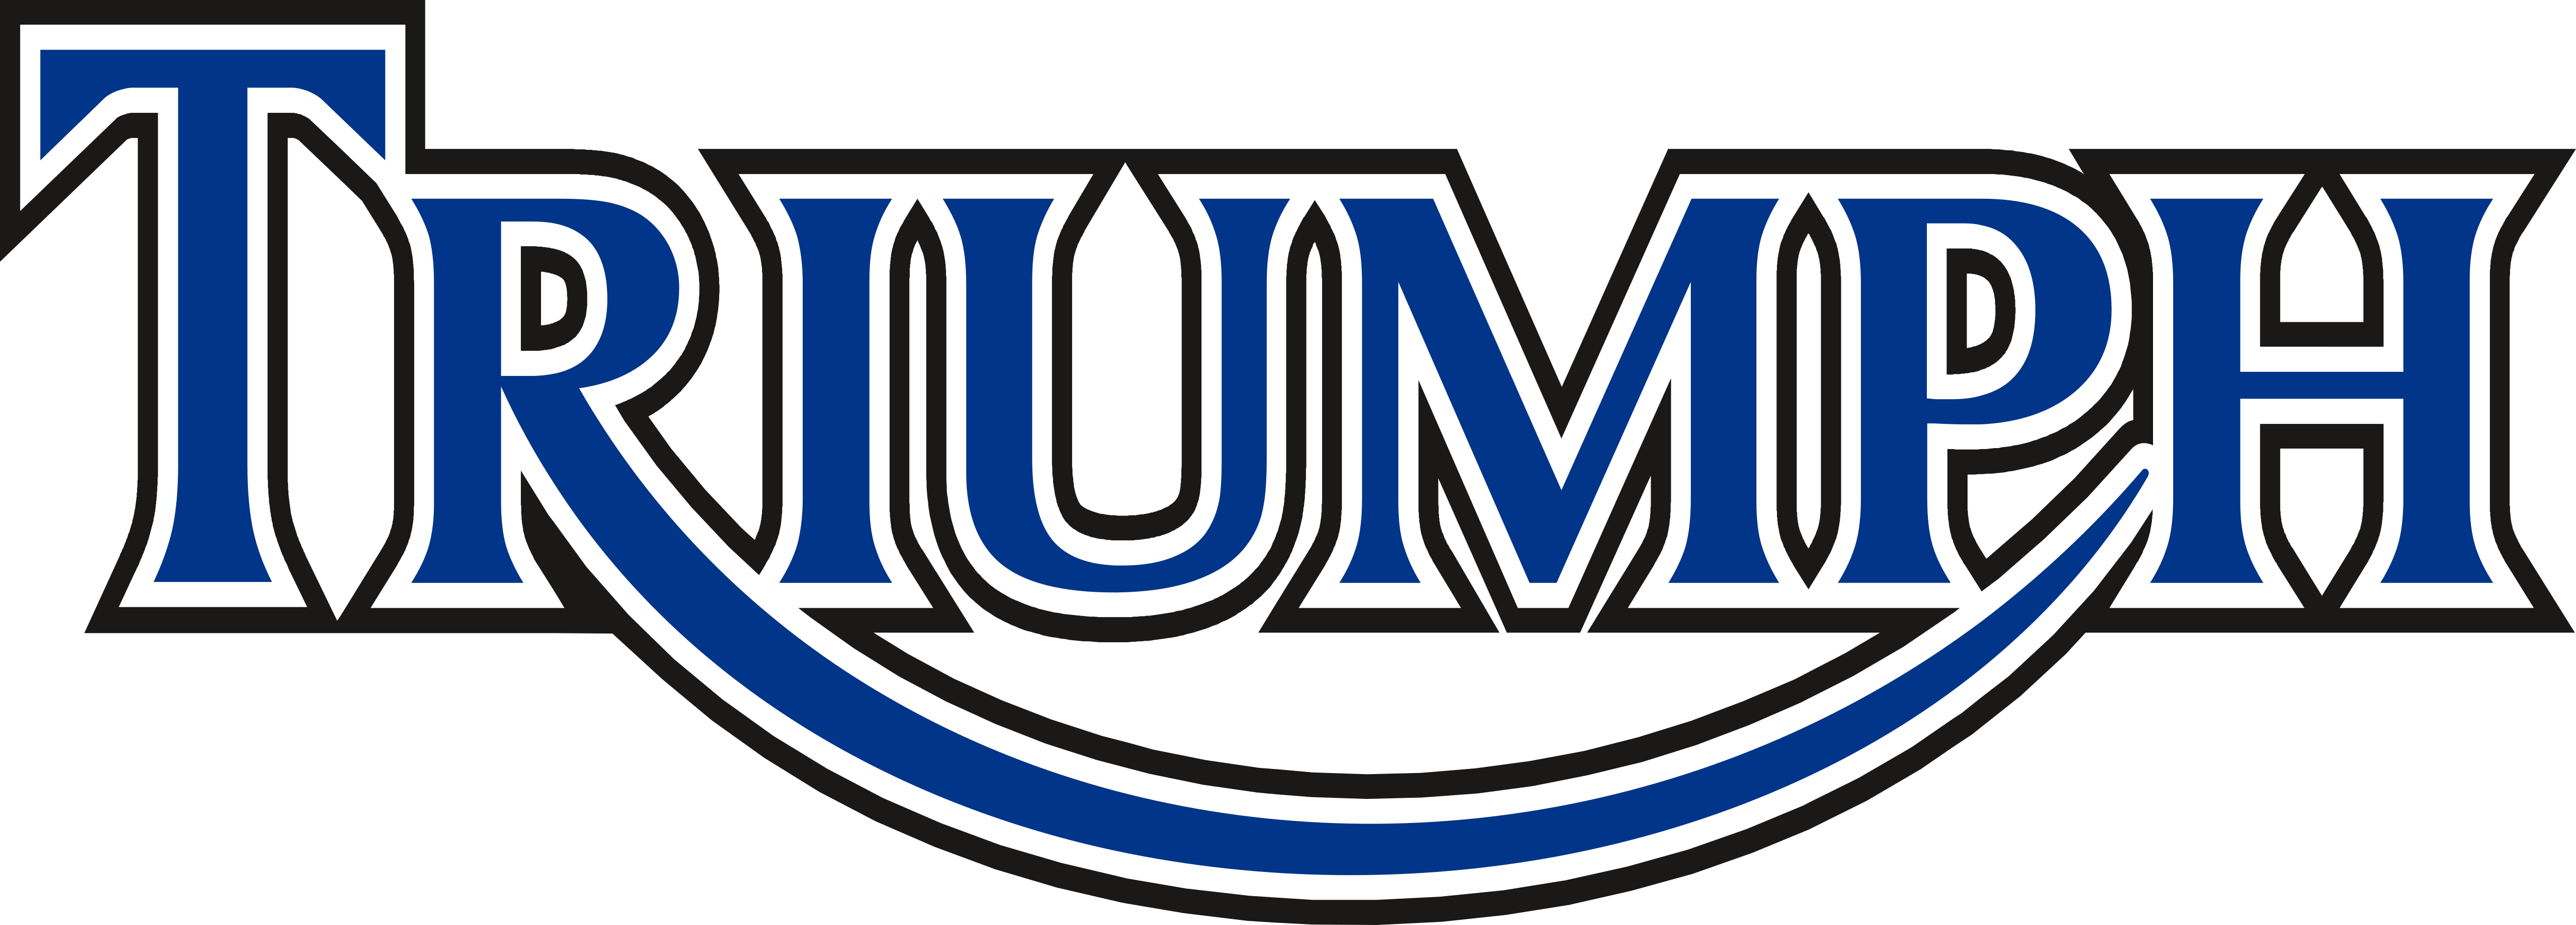 Triumph Studios logo png